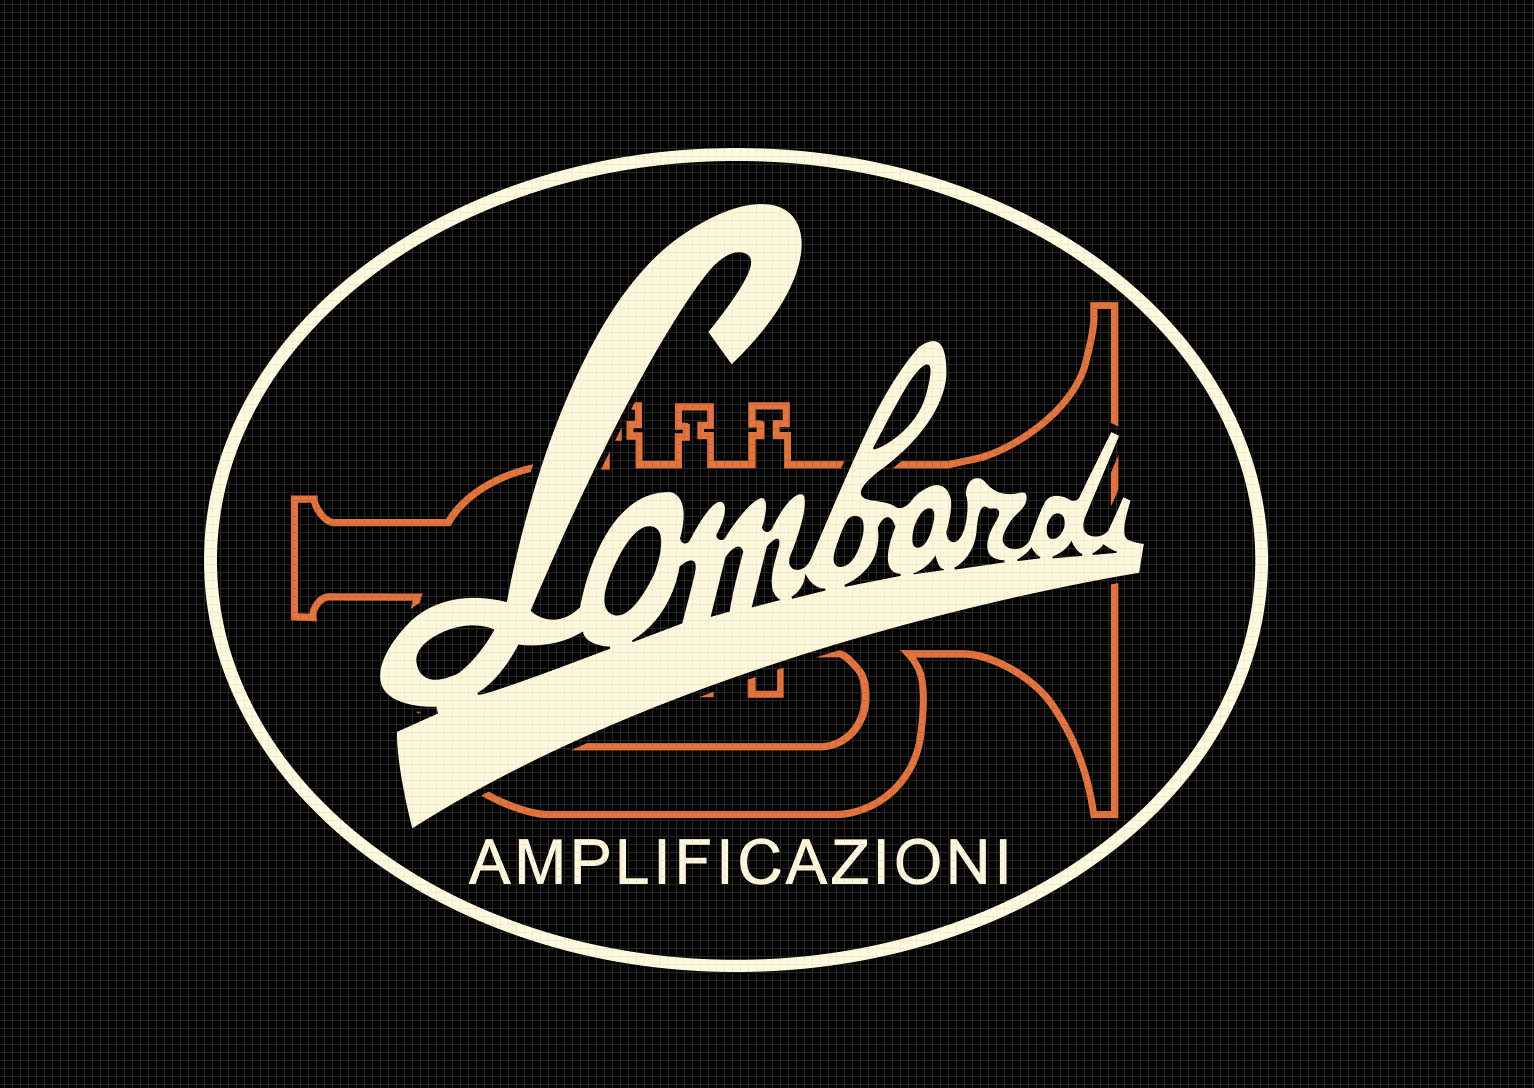 Amplificazioni Lombardi